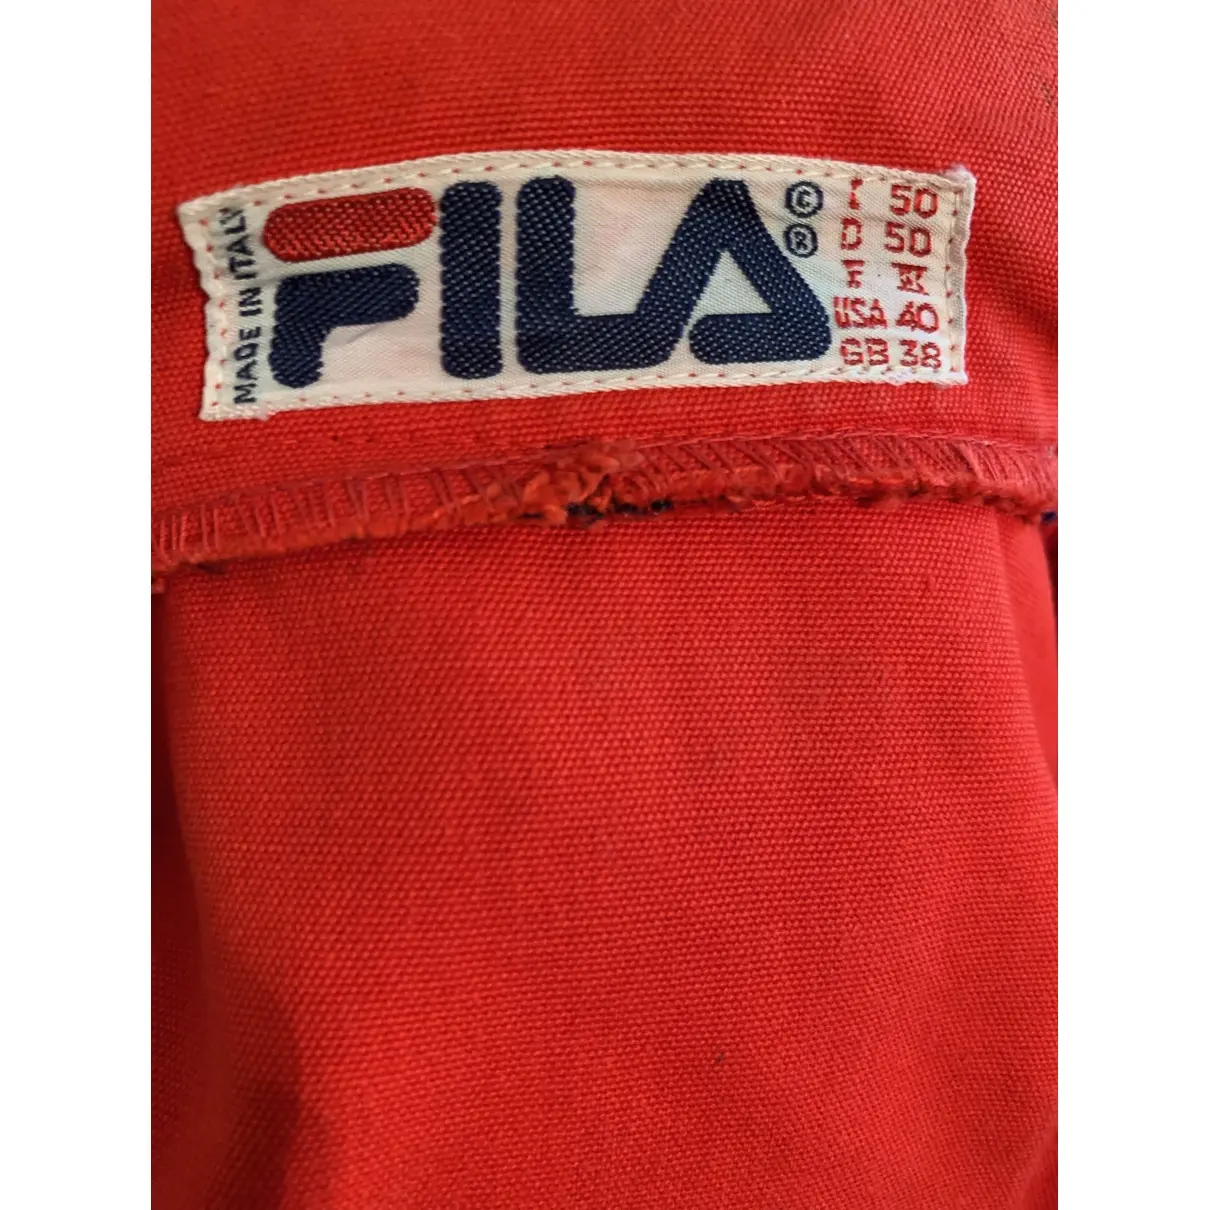 Buy Fila Jacket online - Vintage